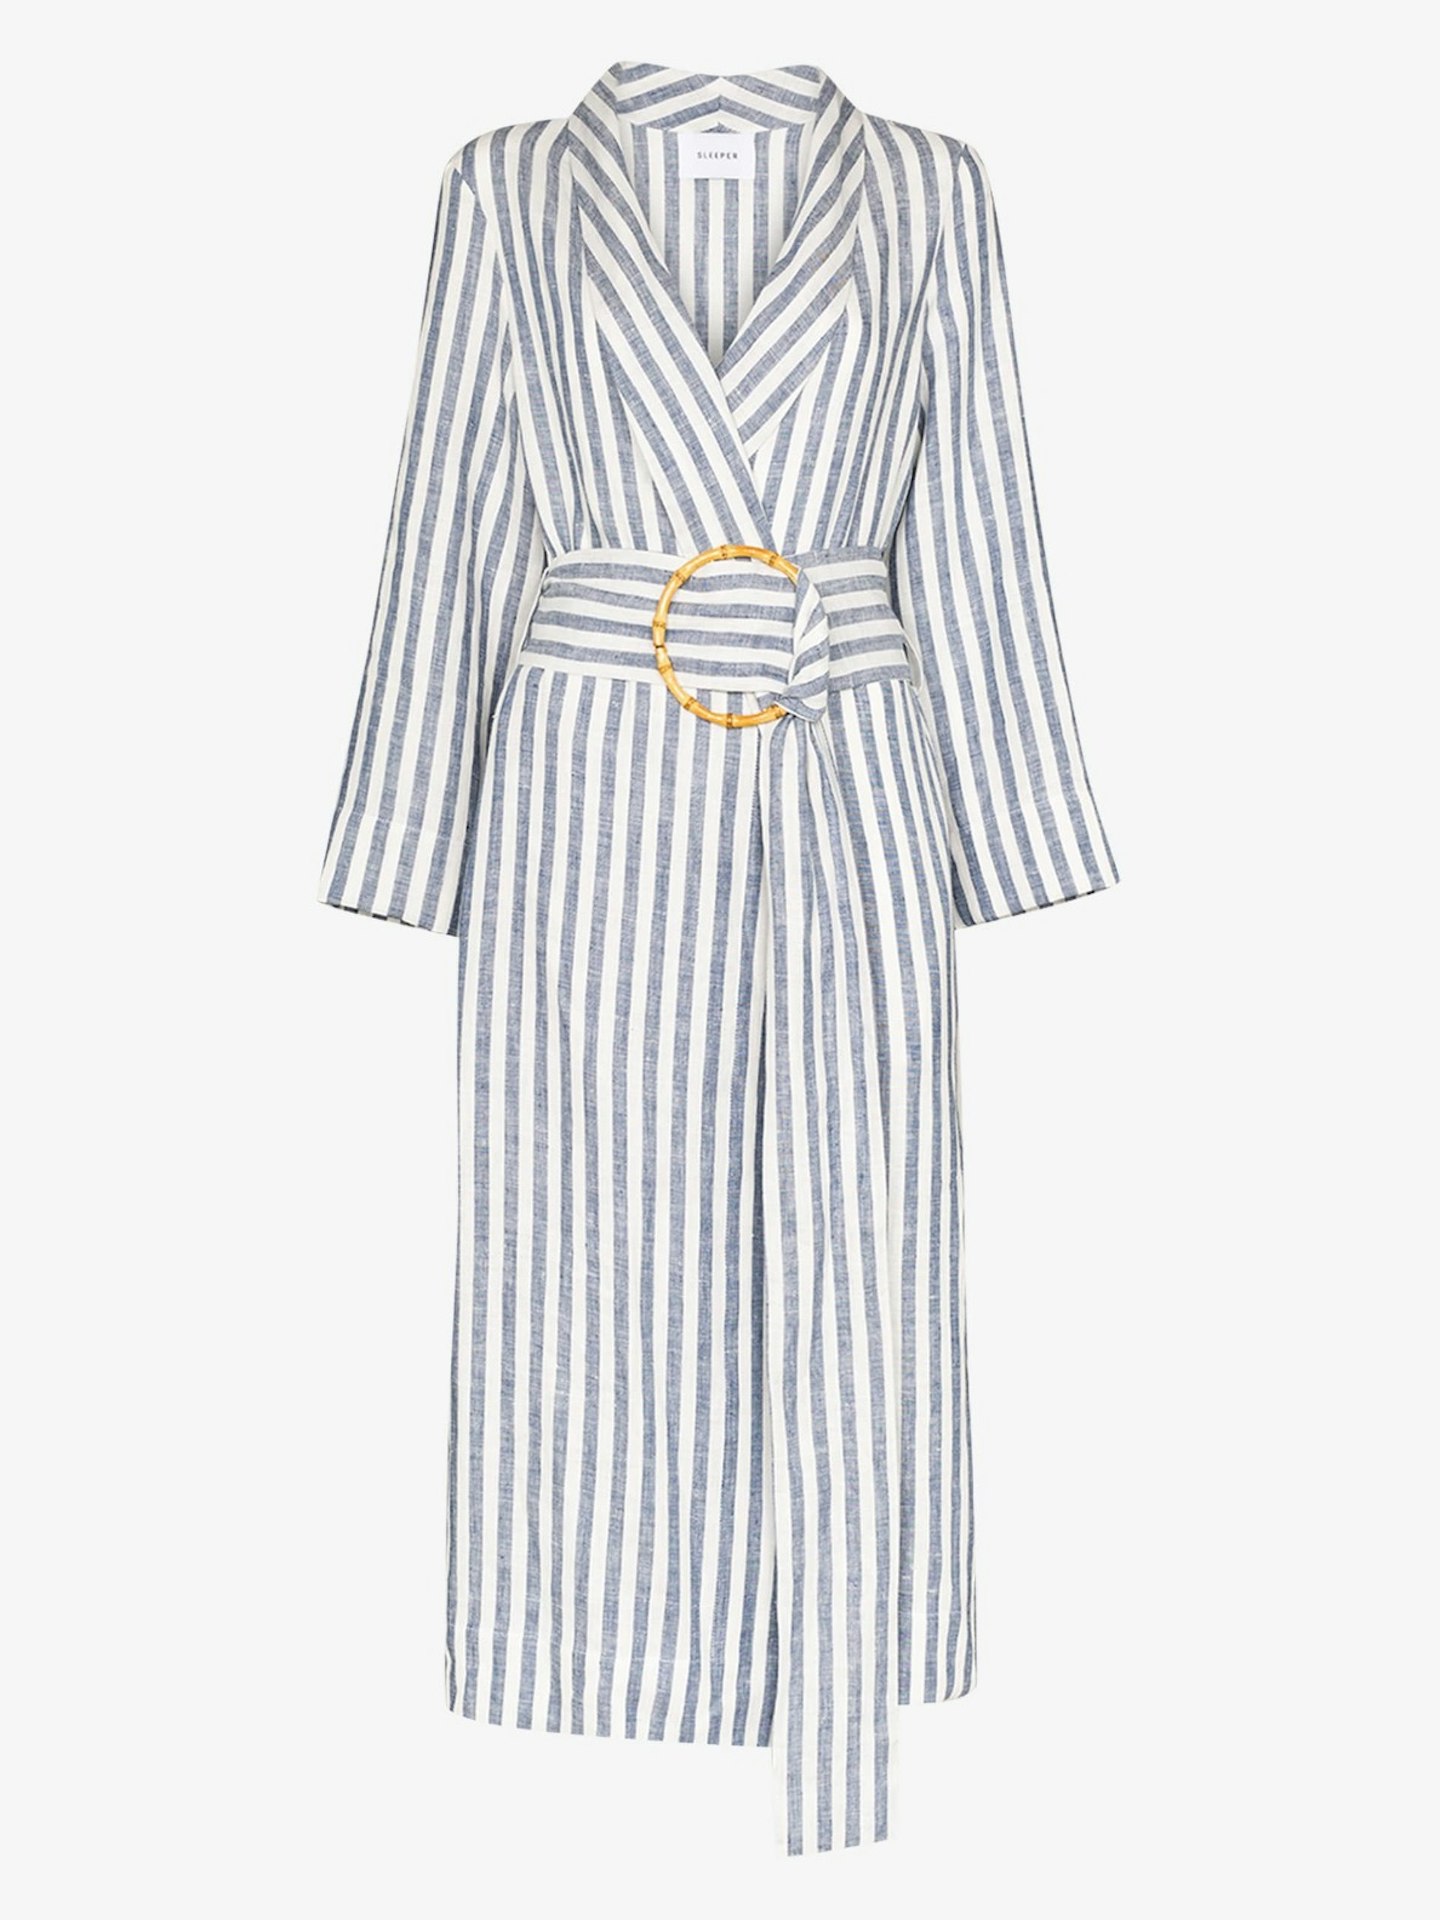 Ruled Linen Robe Dress £215